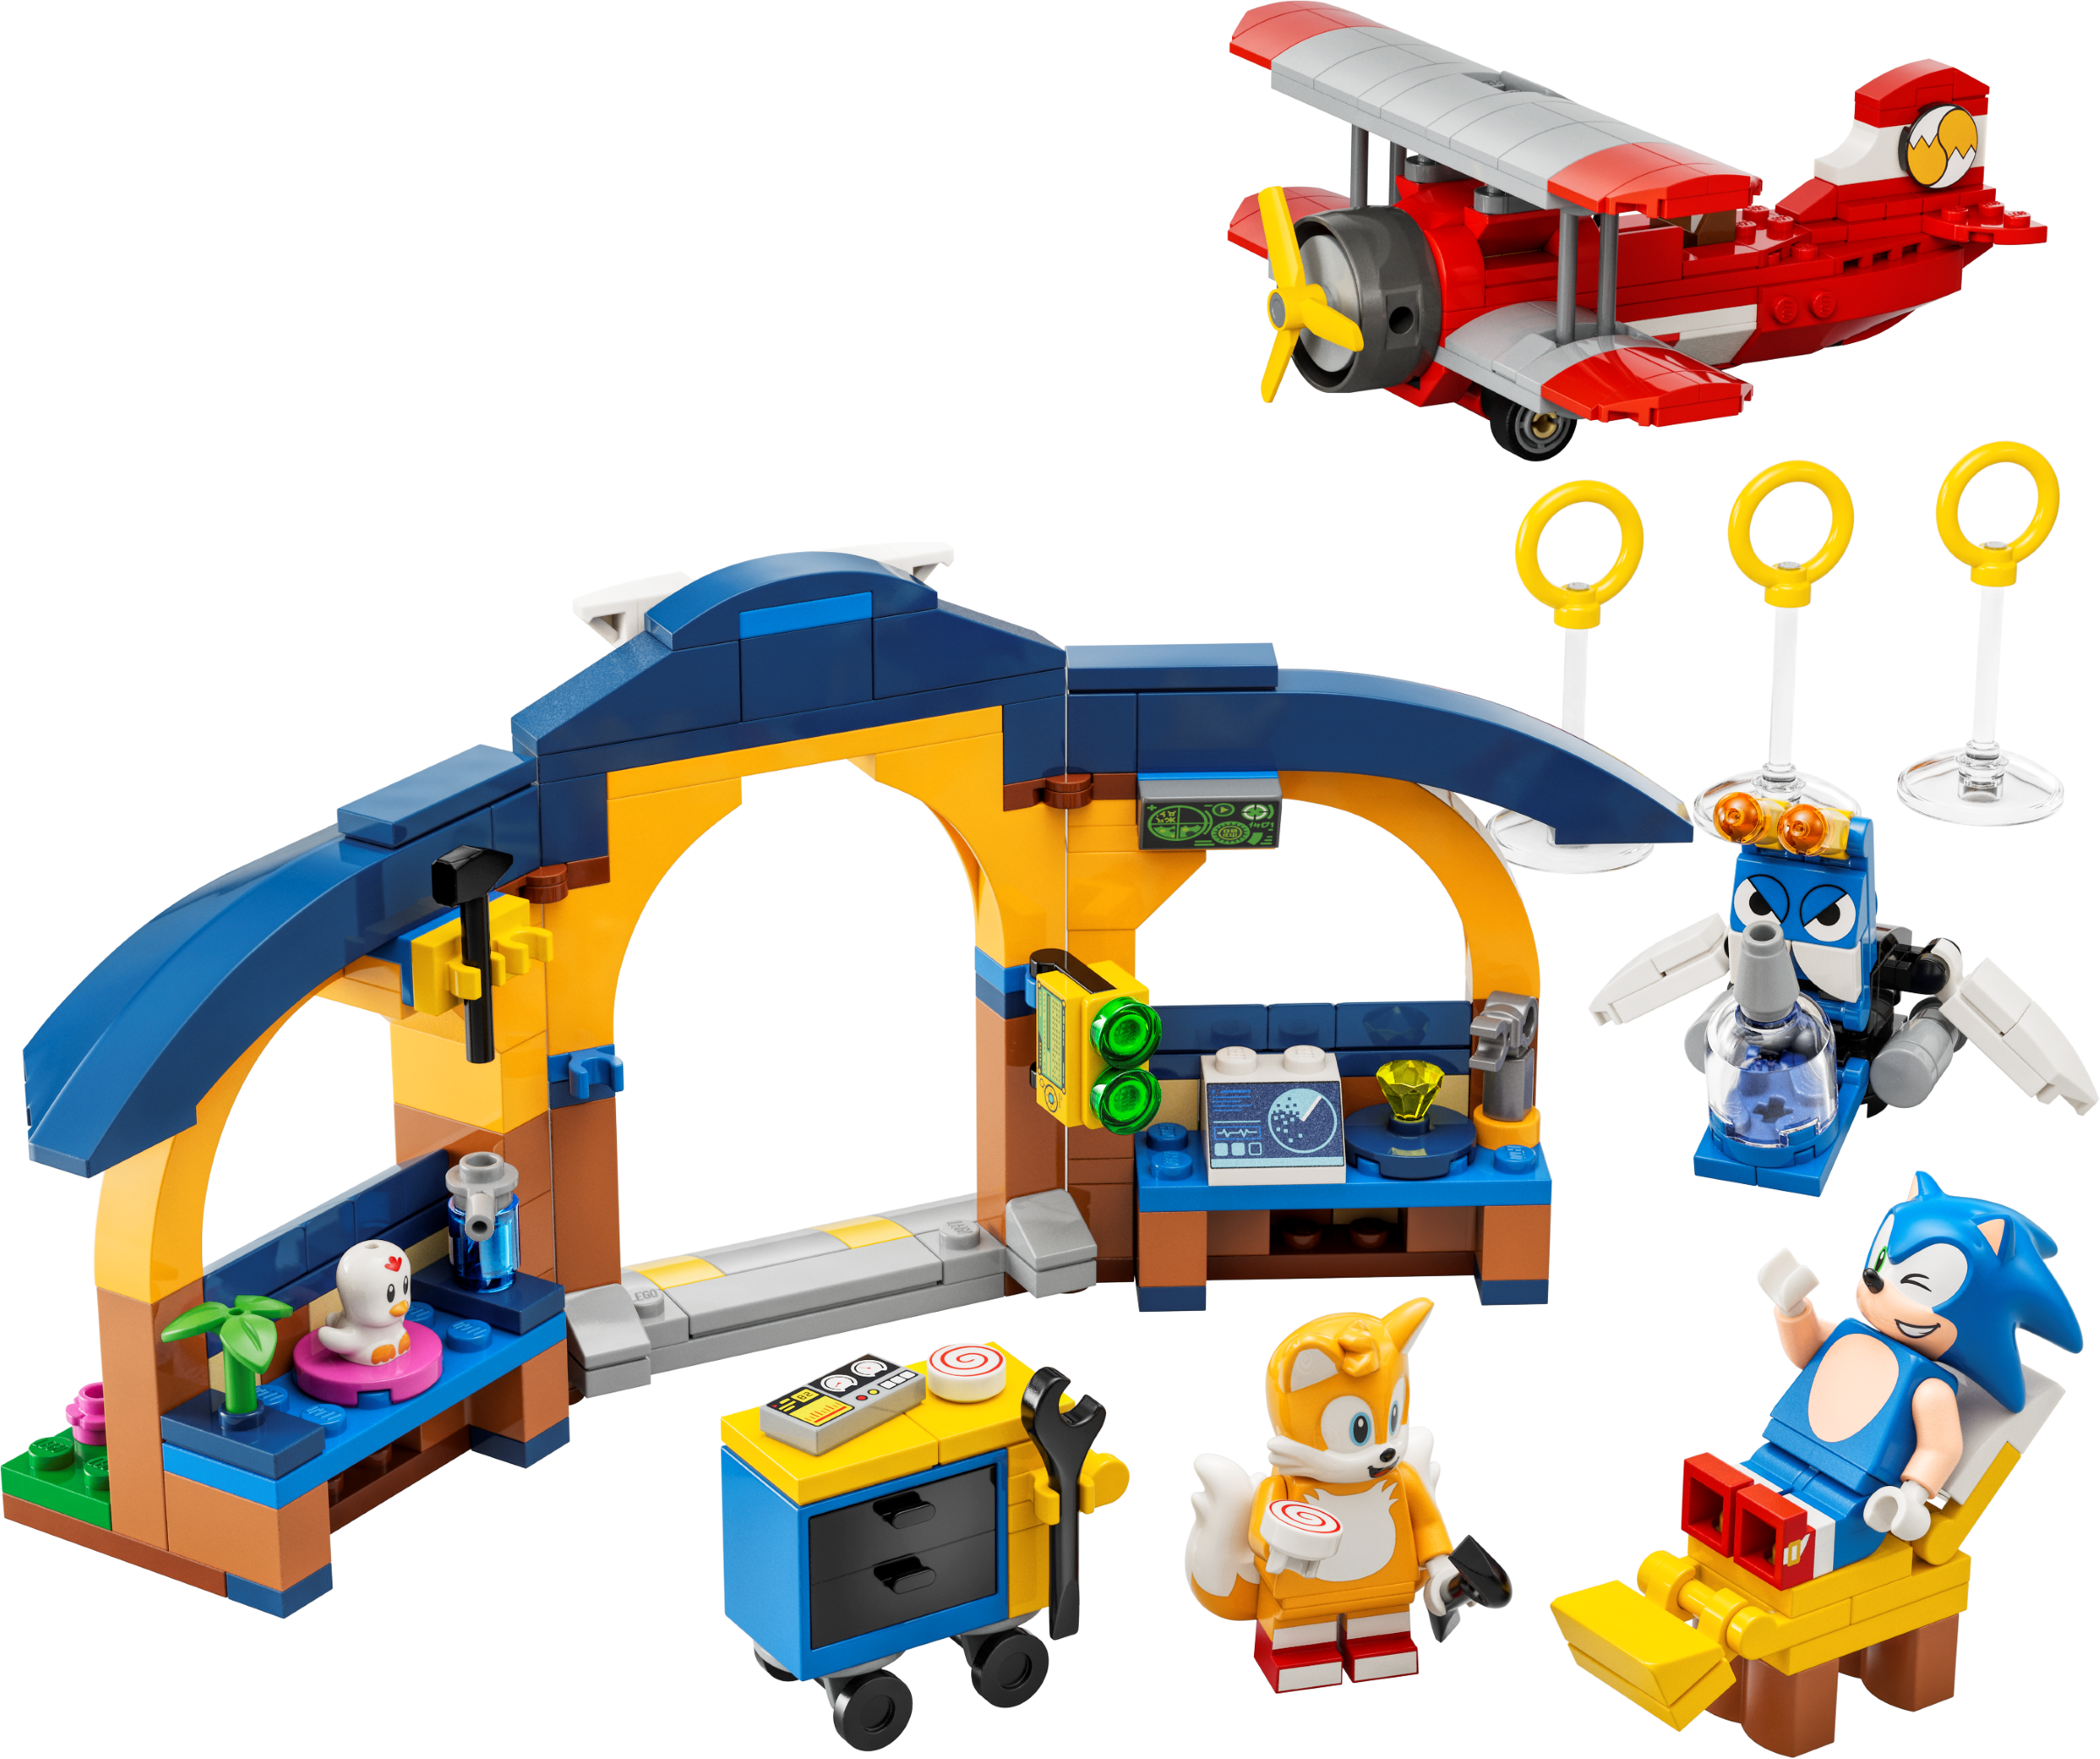 LEGO Sonic - Desafio da Esfera de Velocidade - 292 peças - Lego